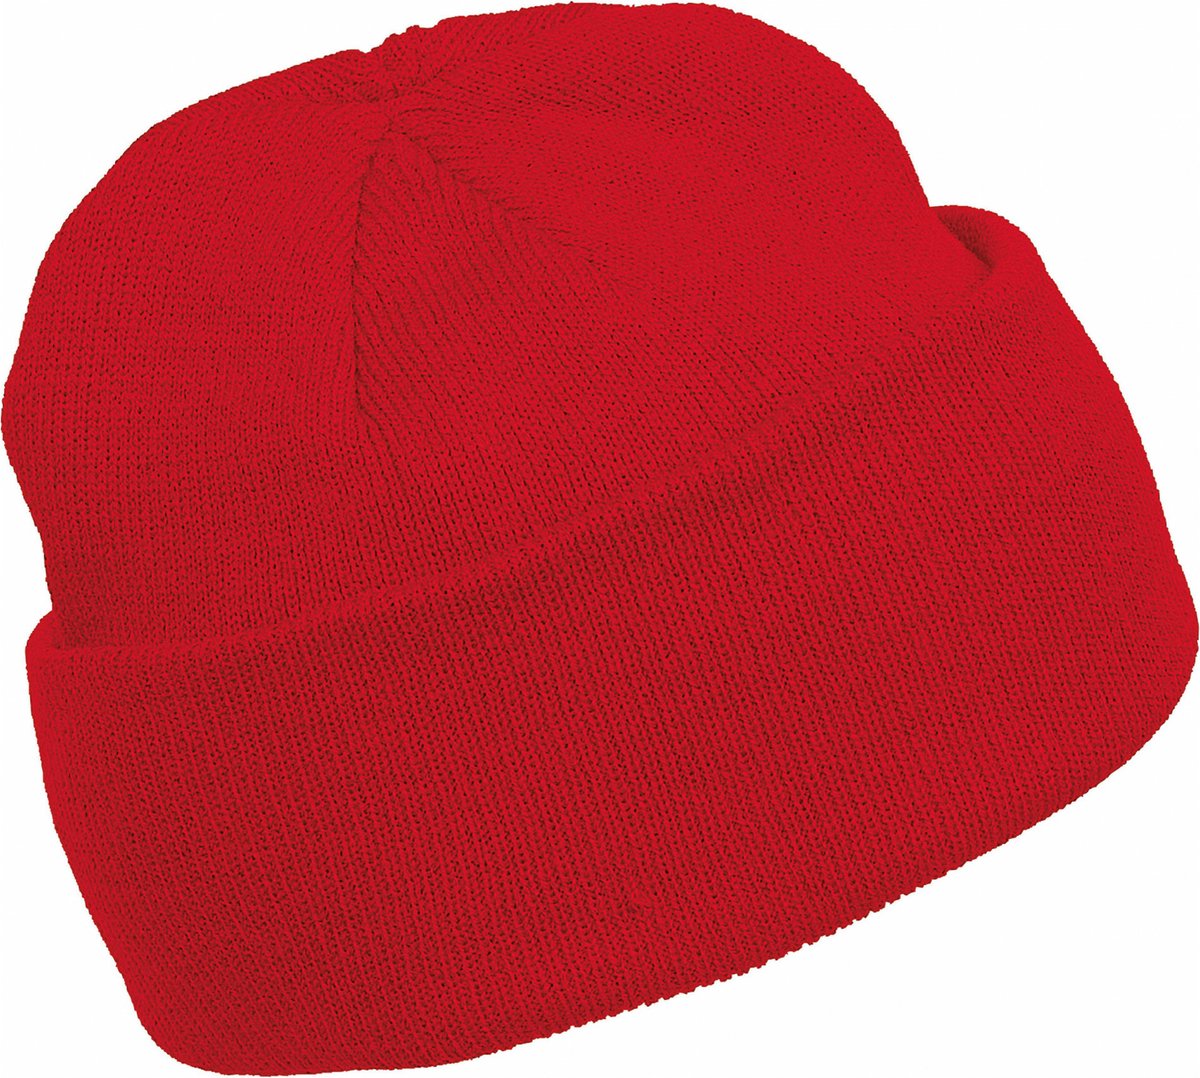 K-up Hats Wintermuts Beanie Yukon - rood - heren/dames - sterk/zacht/licht gebreid 100% Acryl - Dames/herenmuts